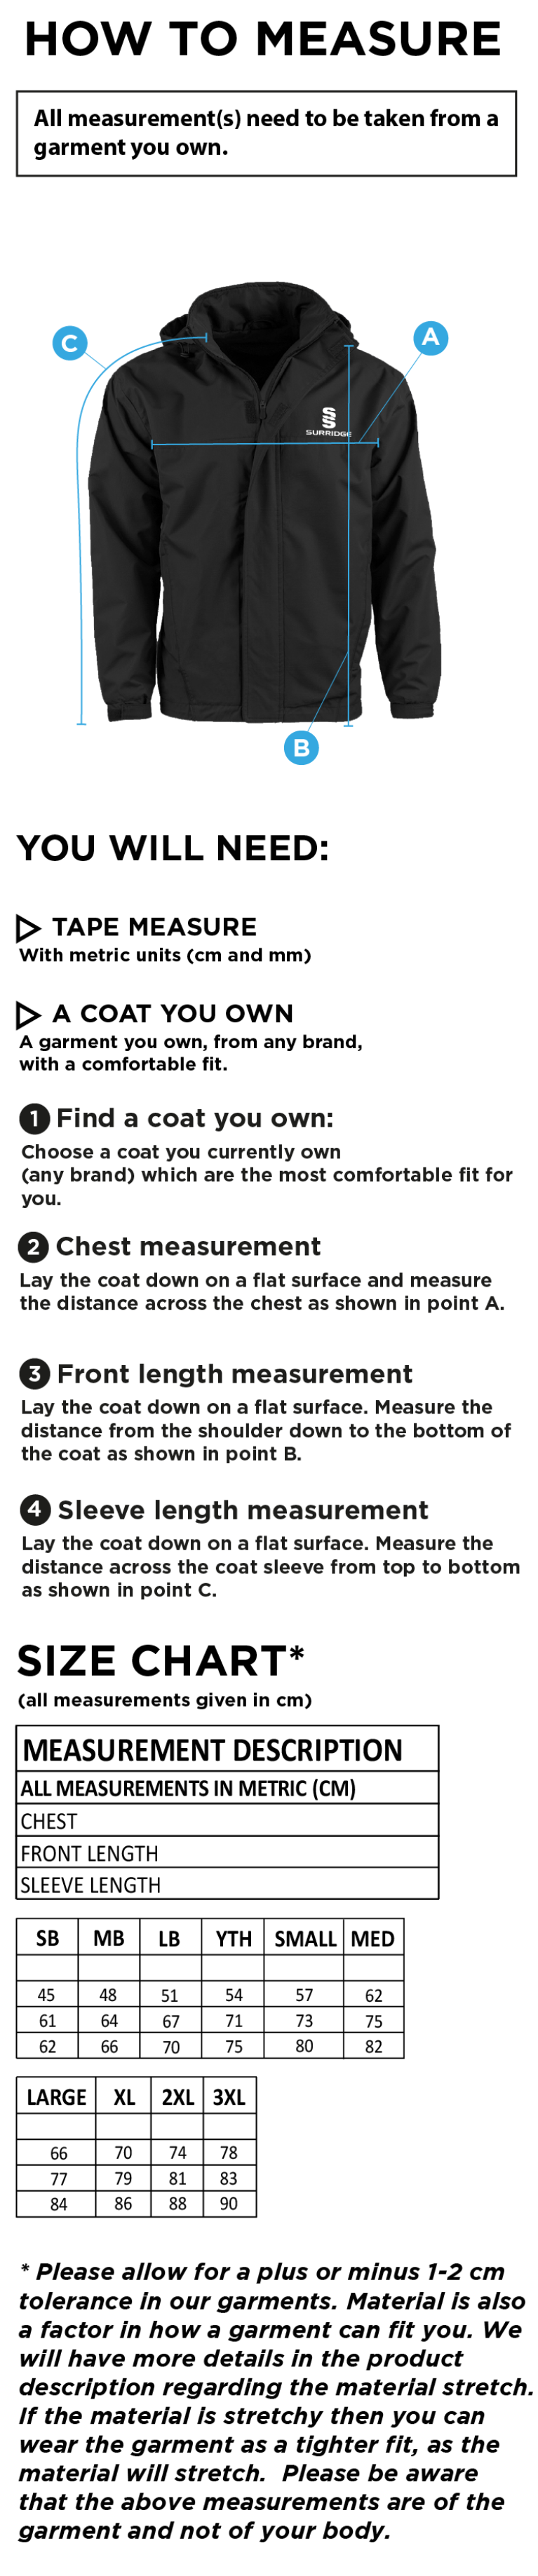 Women's Dual Fleece Lined Jacket : Black - Size Guide